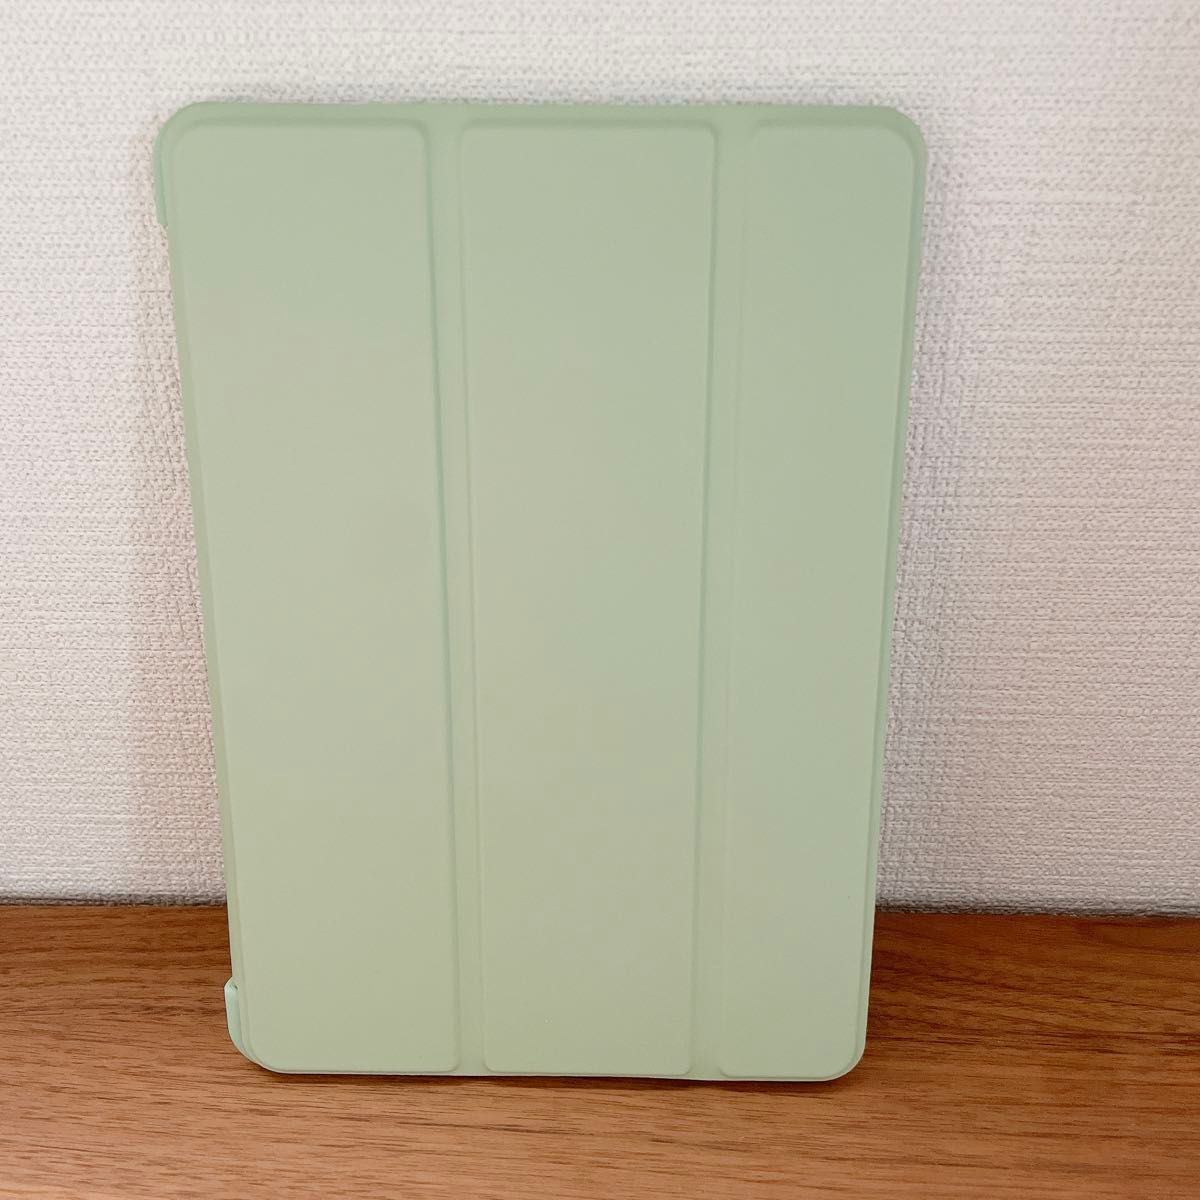 iPad ケース グリーン タブレットケース 9 7インチ ケース 保護 カバー